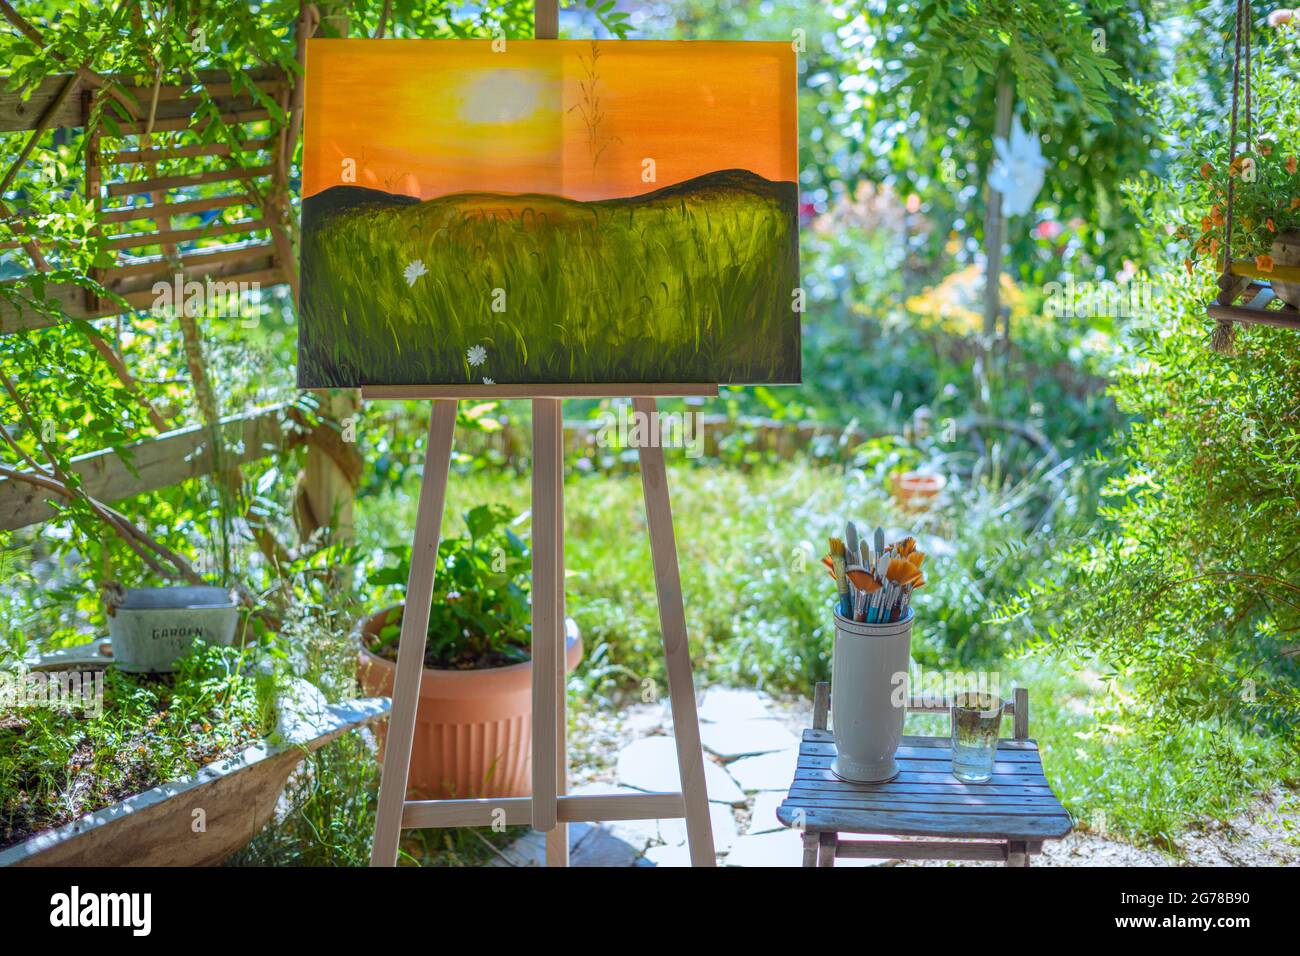 Staffelei mit Leinwandmalerei im Freien in einem Garten. Achtsamkeit, Kunsttherapie und kreatives Hobbys Konzept. Stockfoto